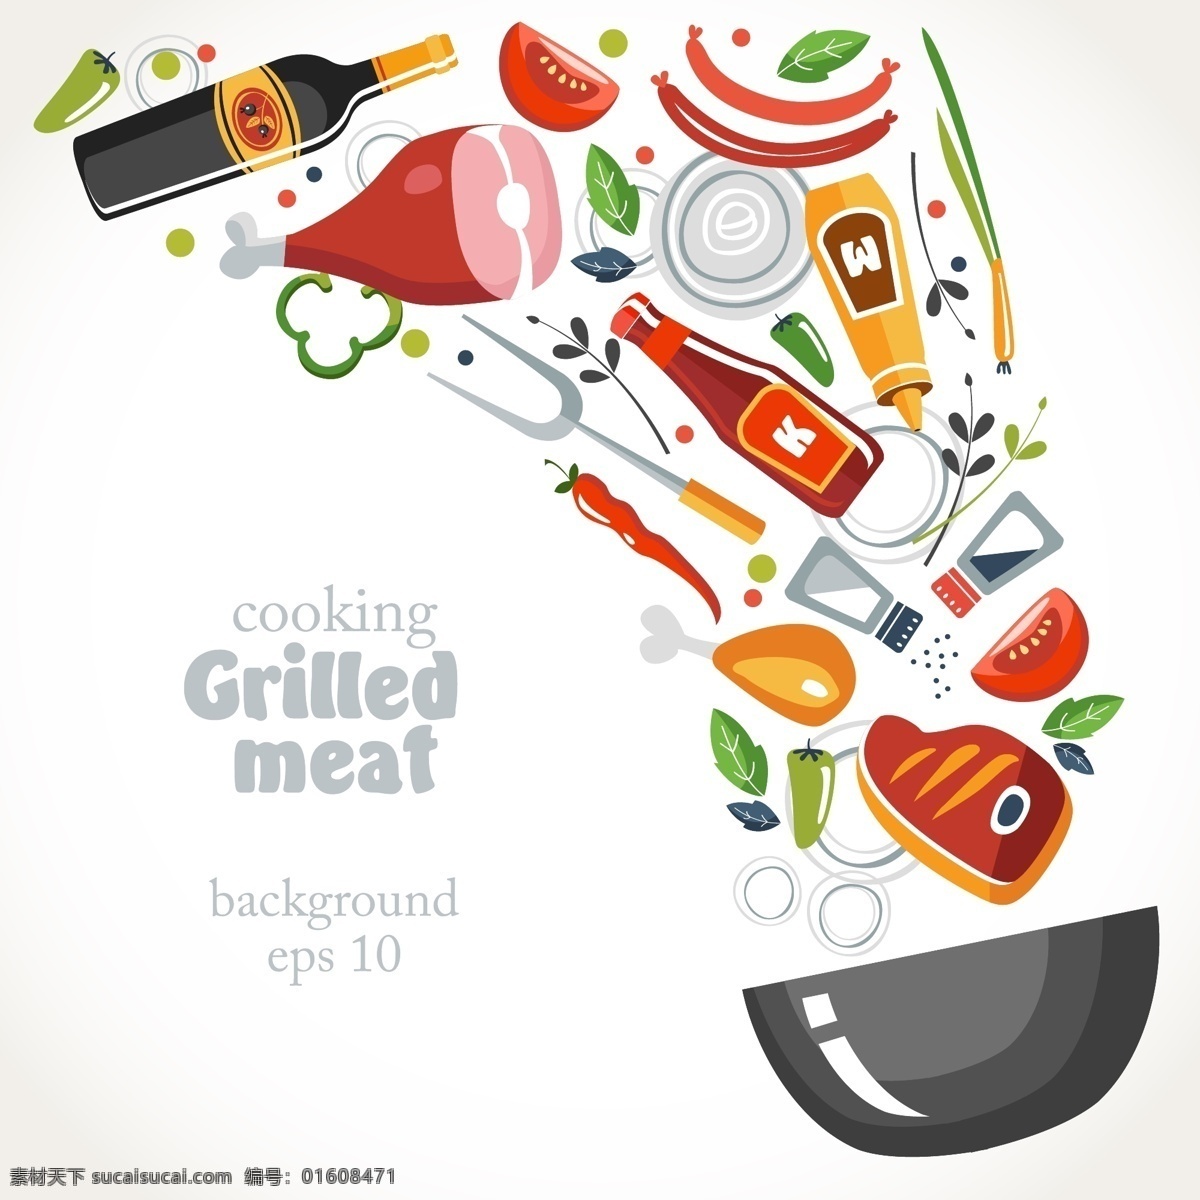 时尚 创意 烹饪 插画 西餐 食材 肉类 调料